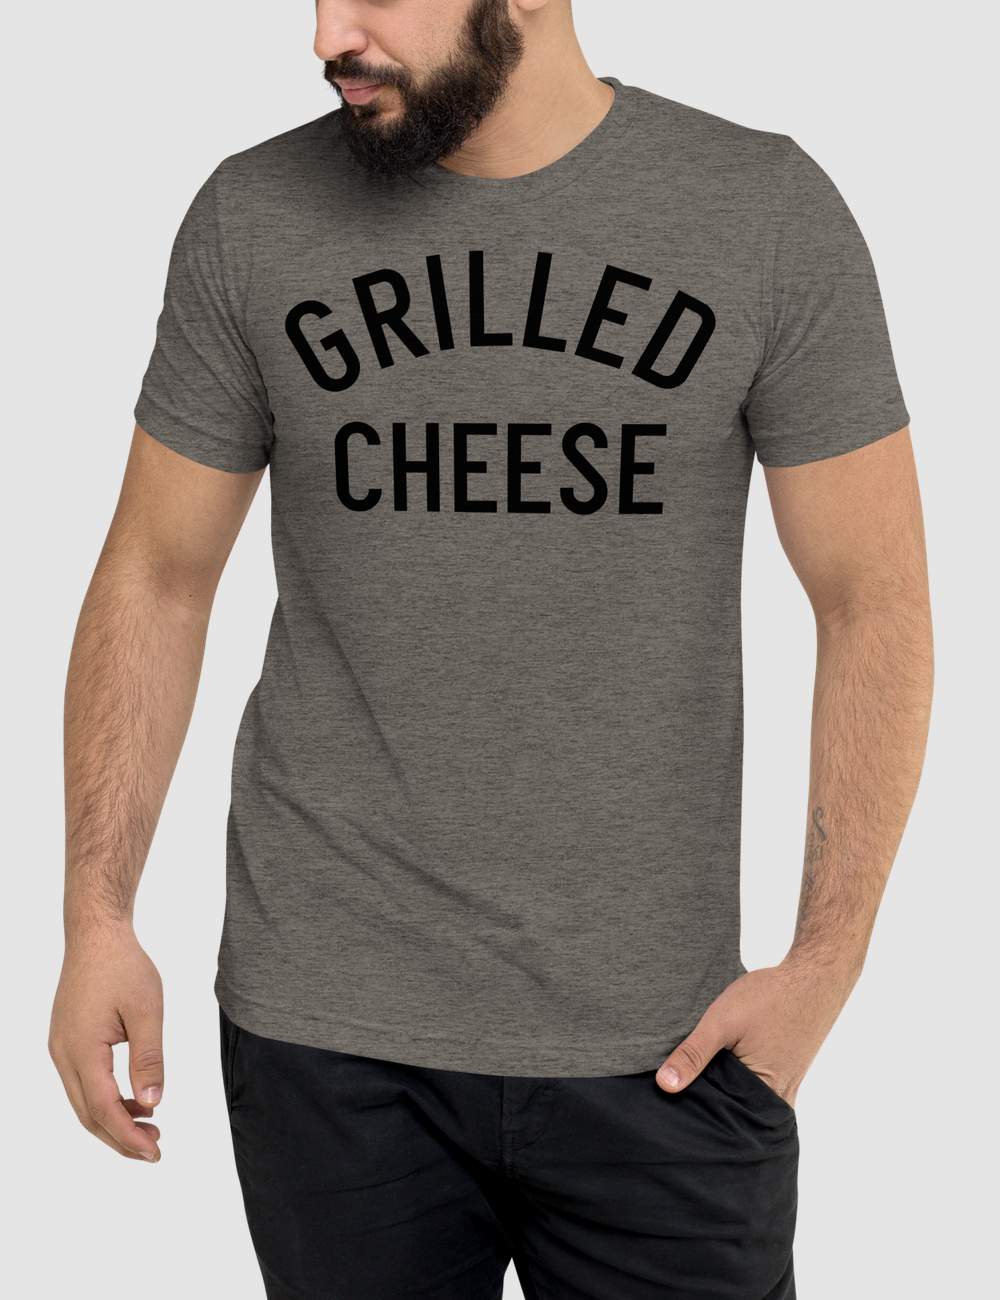 Grilled Cheese | Tri-Blend T-Shirt OniTakai